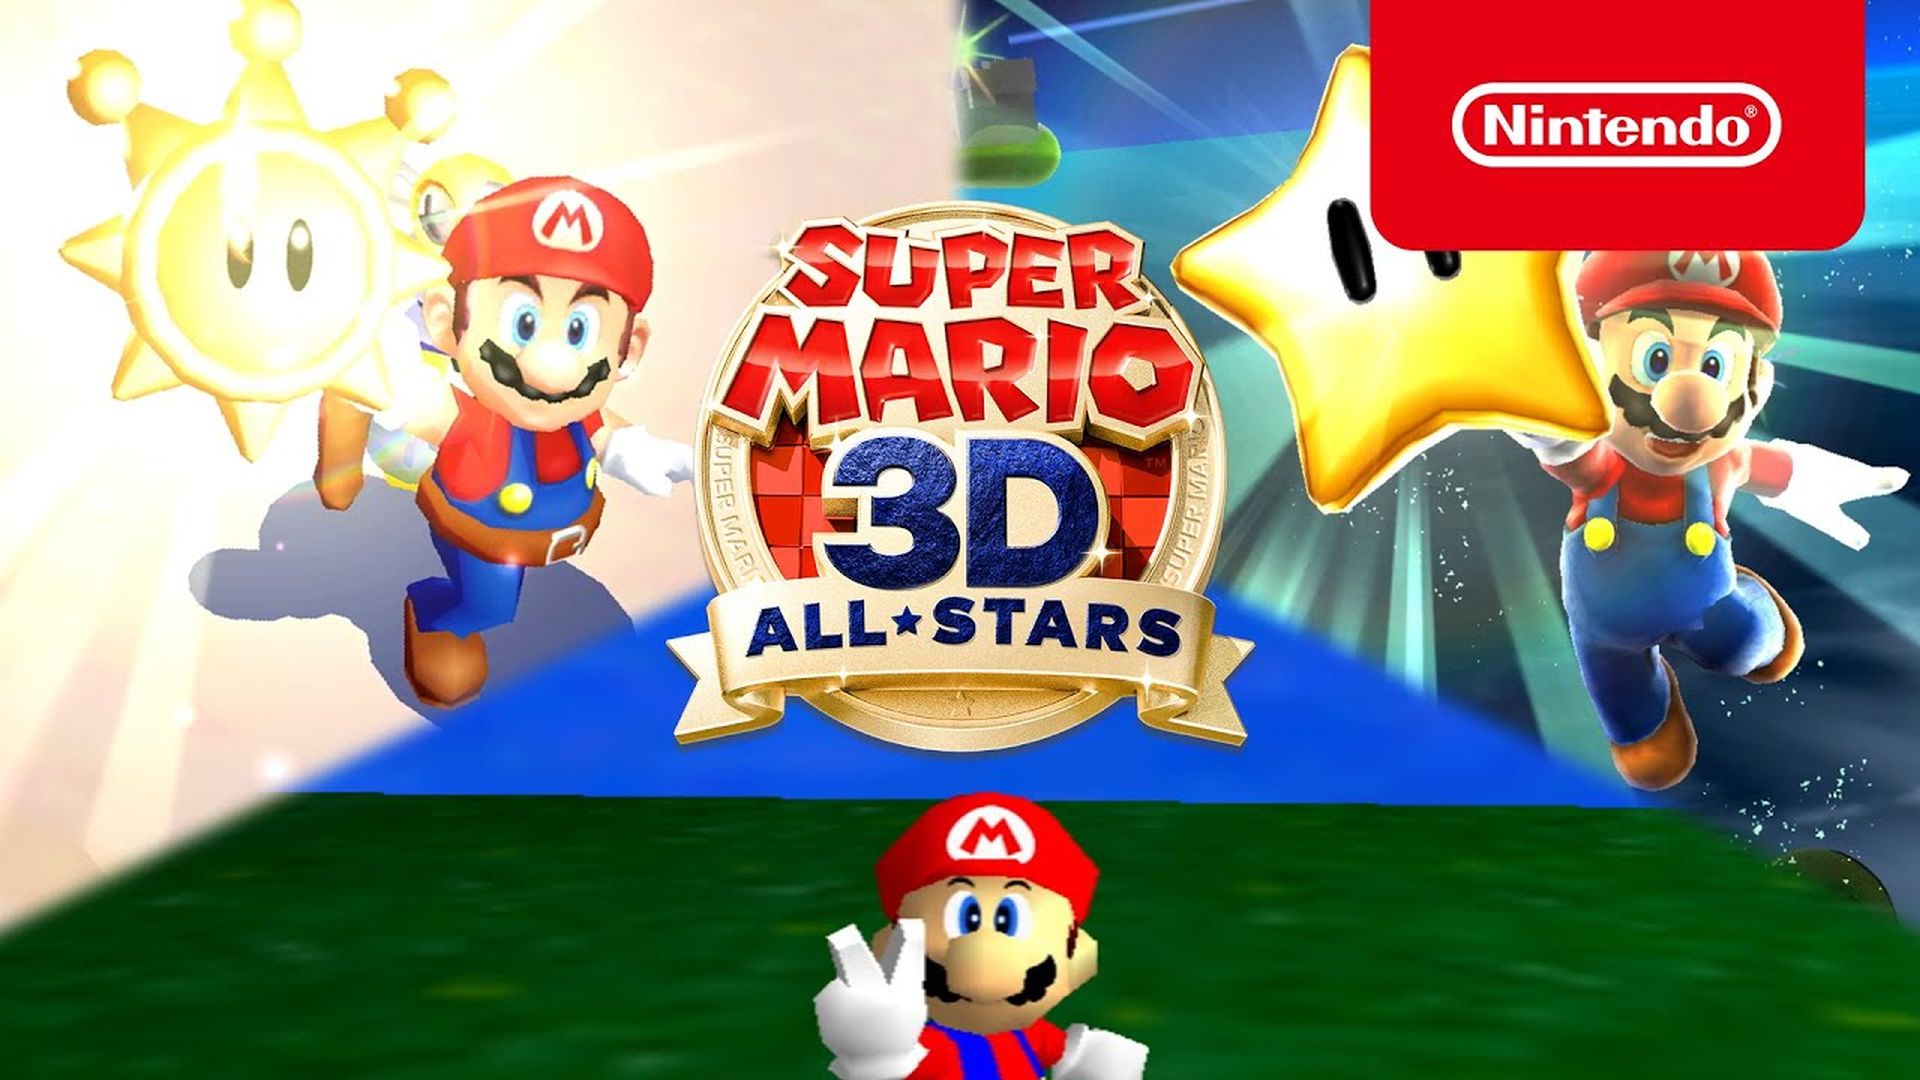 Super Mario 3d a h-uile rionnagan a-nuas